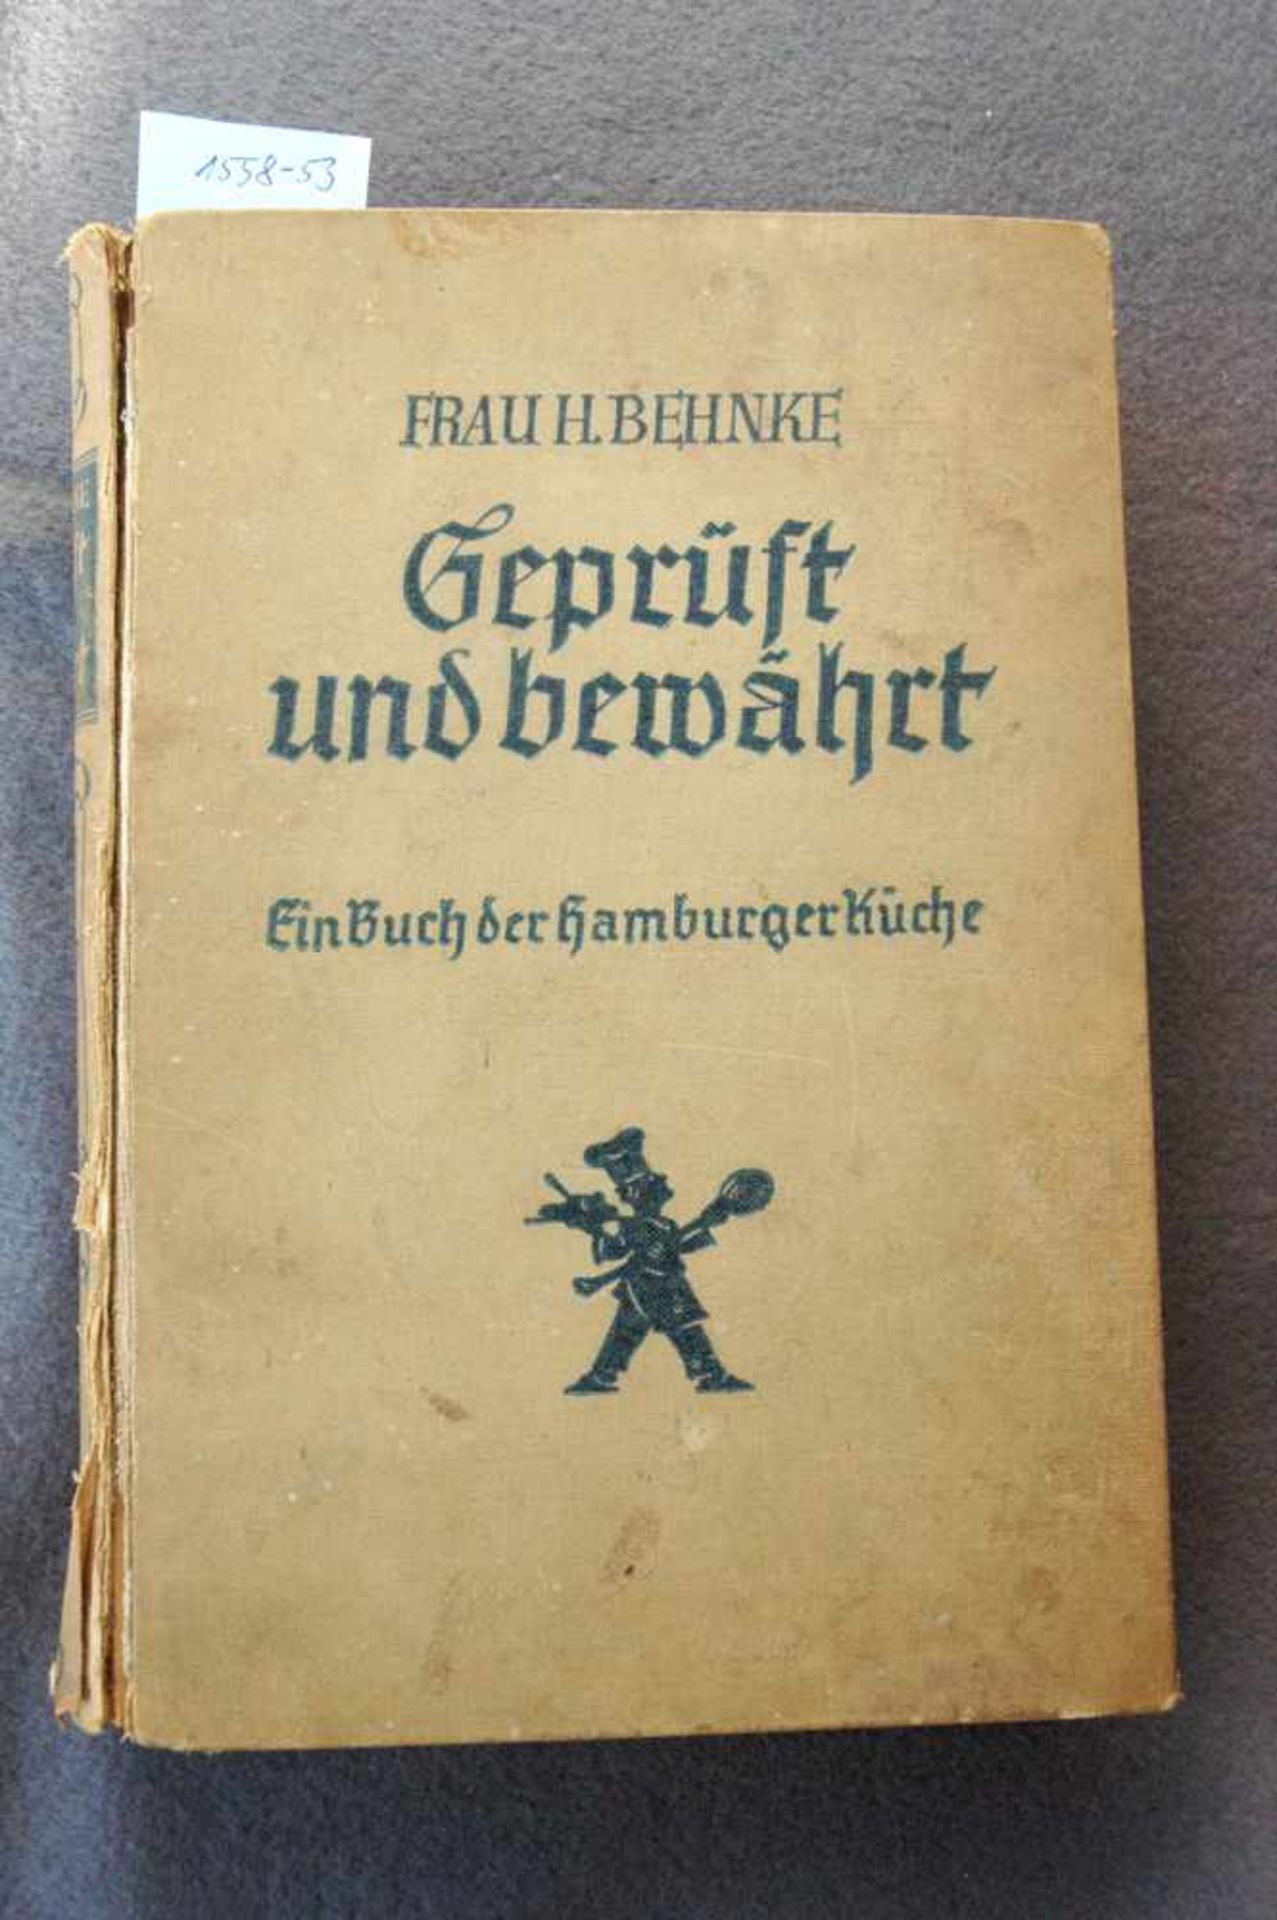 Behnke, Frau H.: Geprüft und bewährt, Ein Buch der Hamburger Küche, Alster Verlag 1926, 5. Aufl. 524